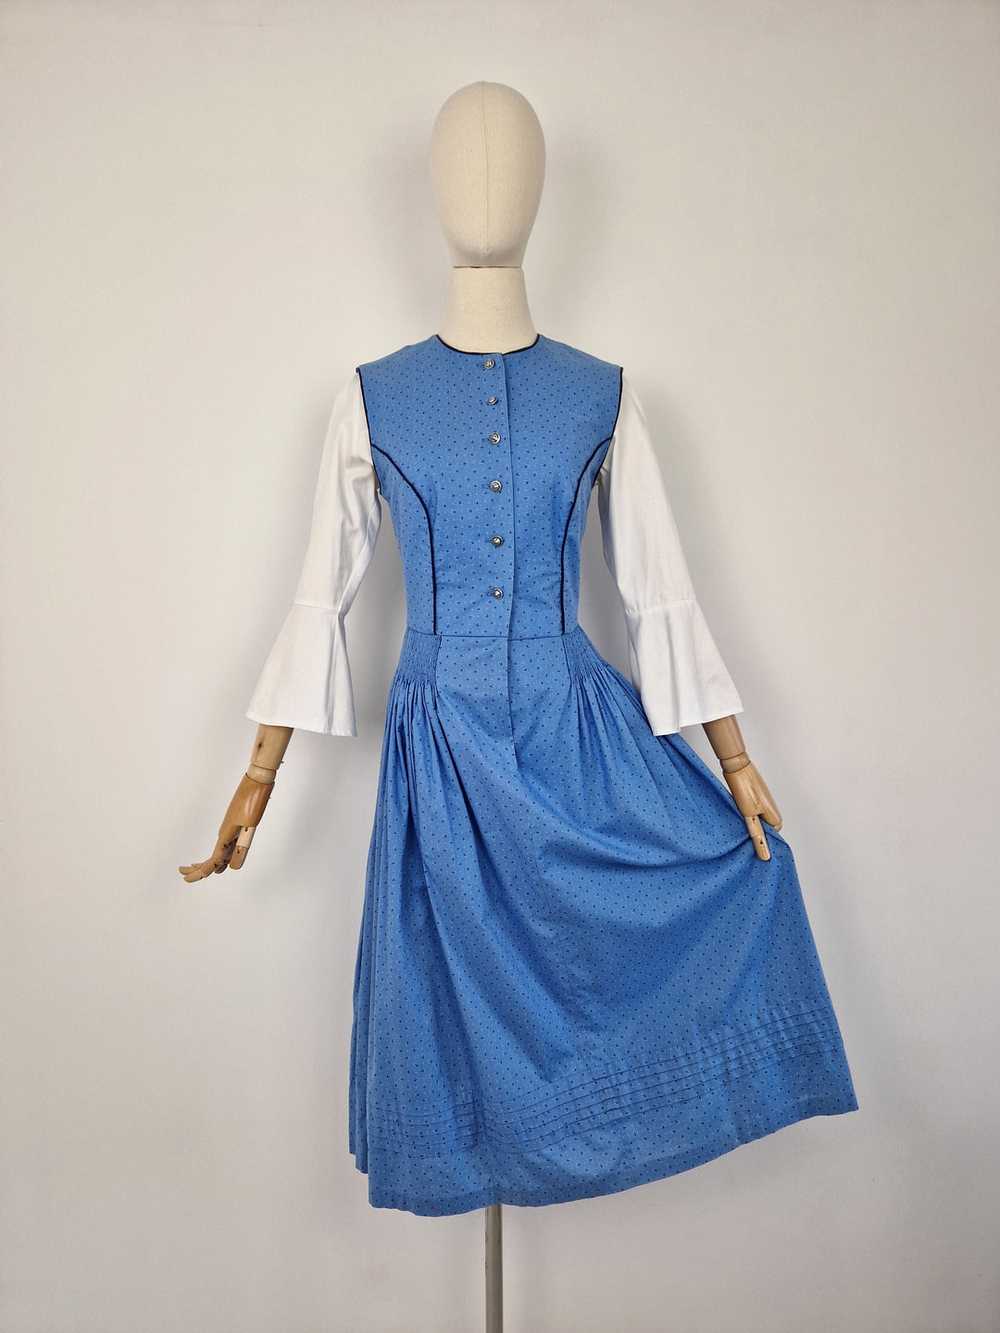 Vintage blue dirndl dress - image 3